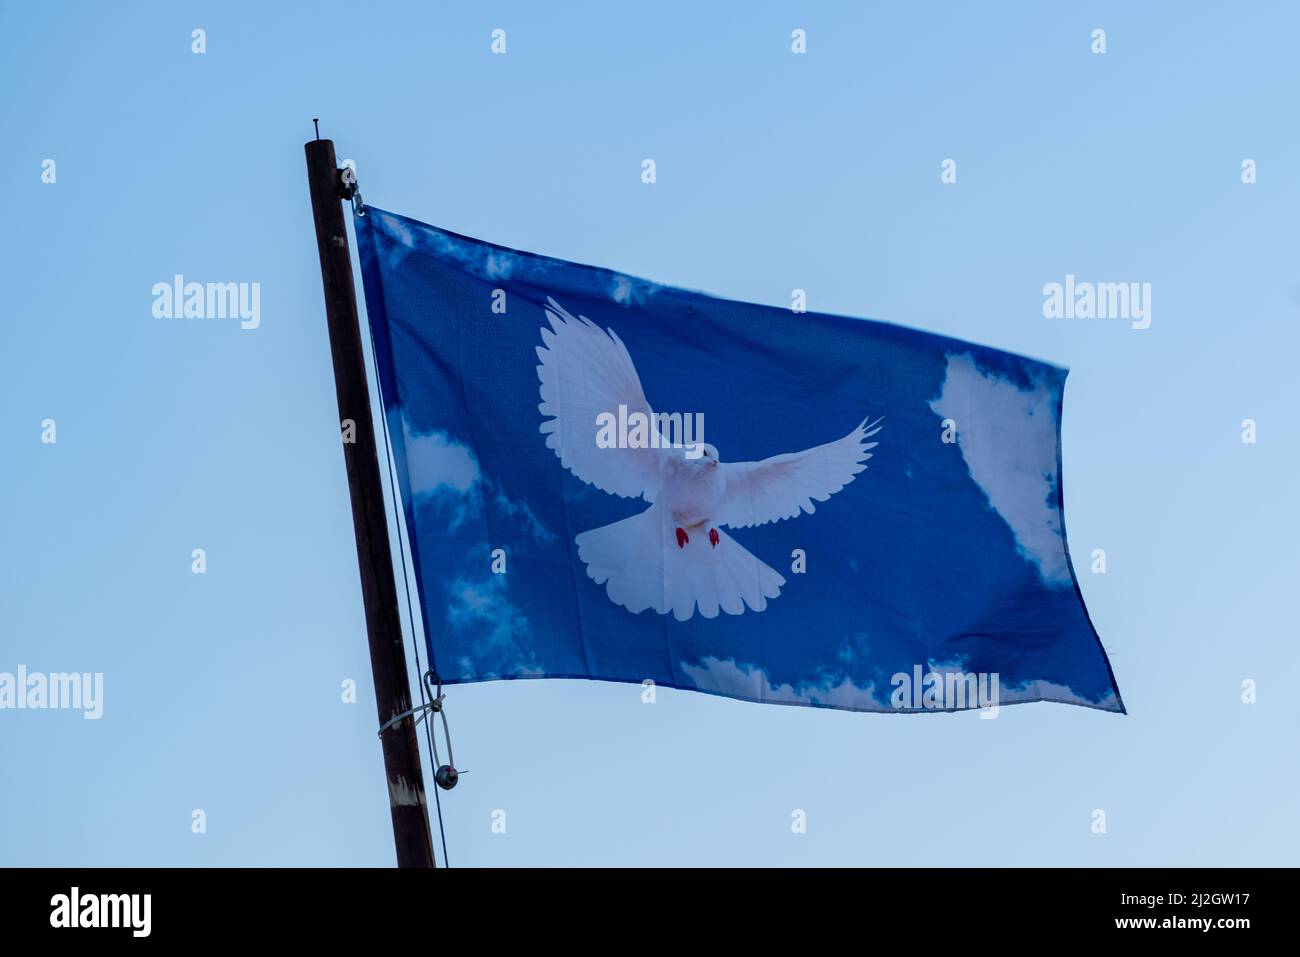 https://c8.alamy.com/compde/2j2gw17/hamburg-deutschland-03132022nahaufnahme-eines-fahnenmastes-mit-einer-blauen-flagge-mit-einer-friedenstaube-gegen-einen-blauen-himmel-2j2gw17.jpg